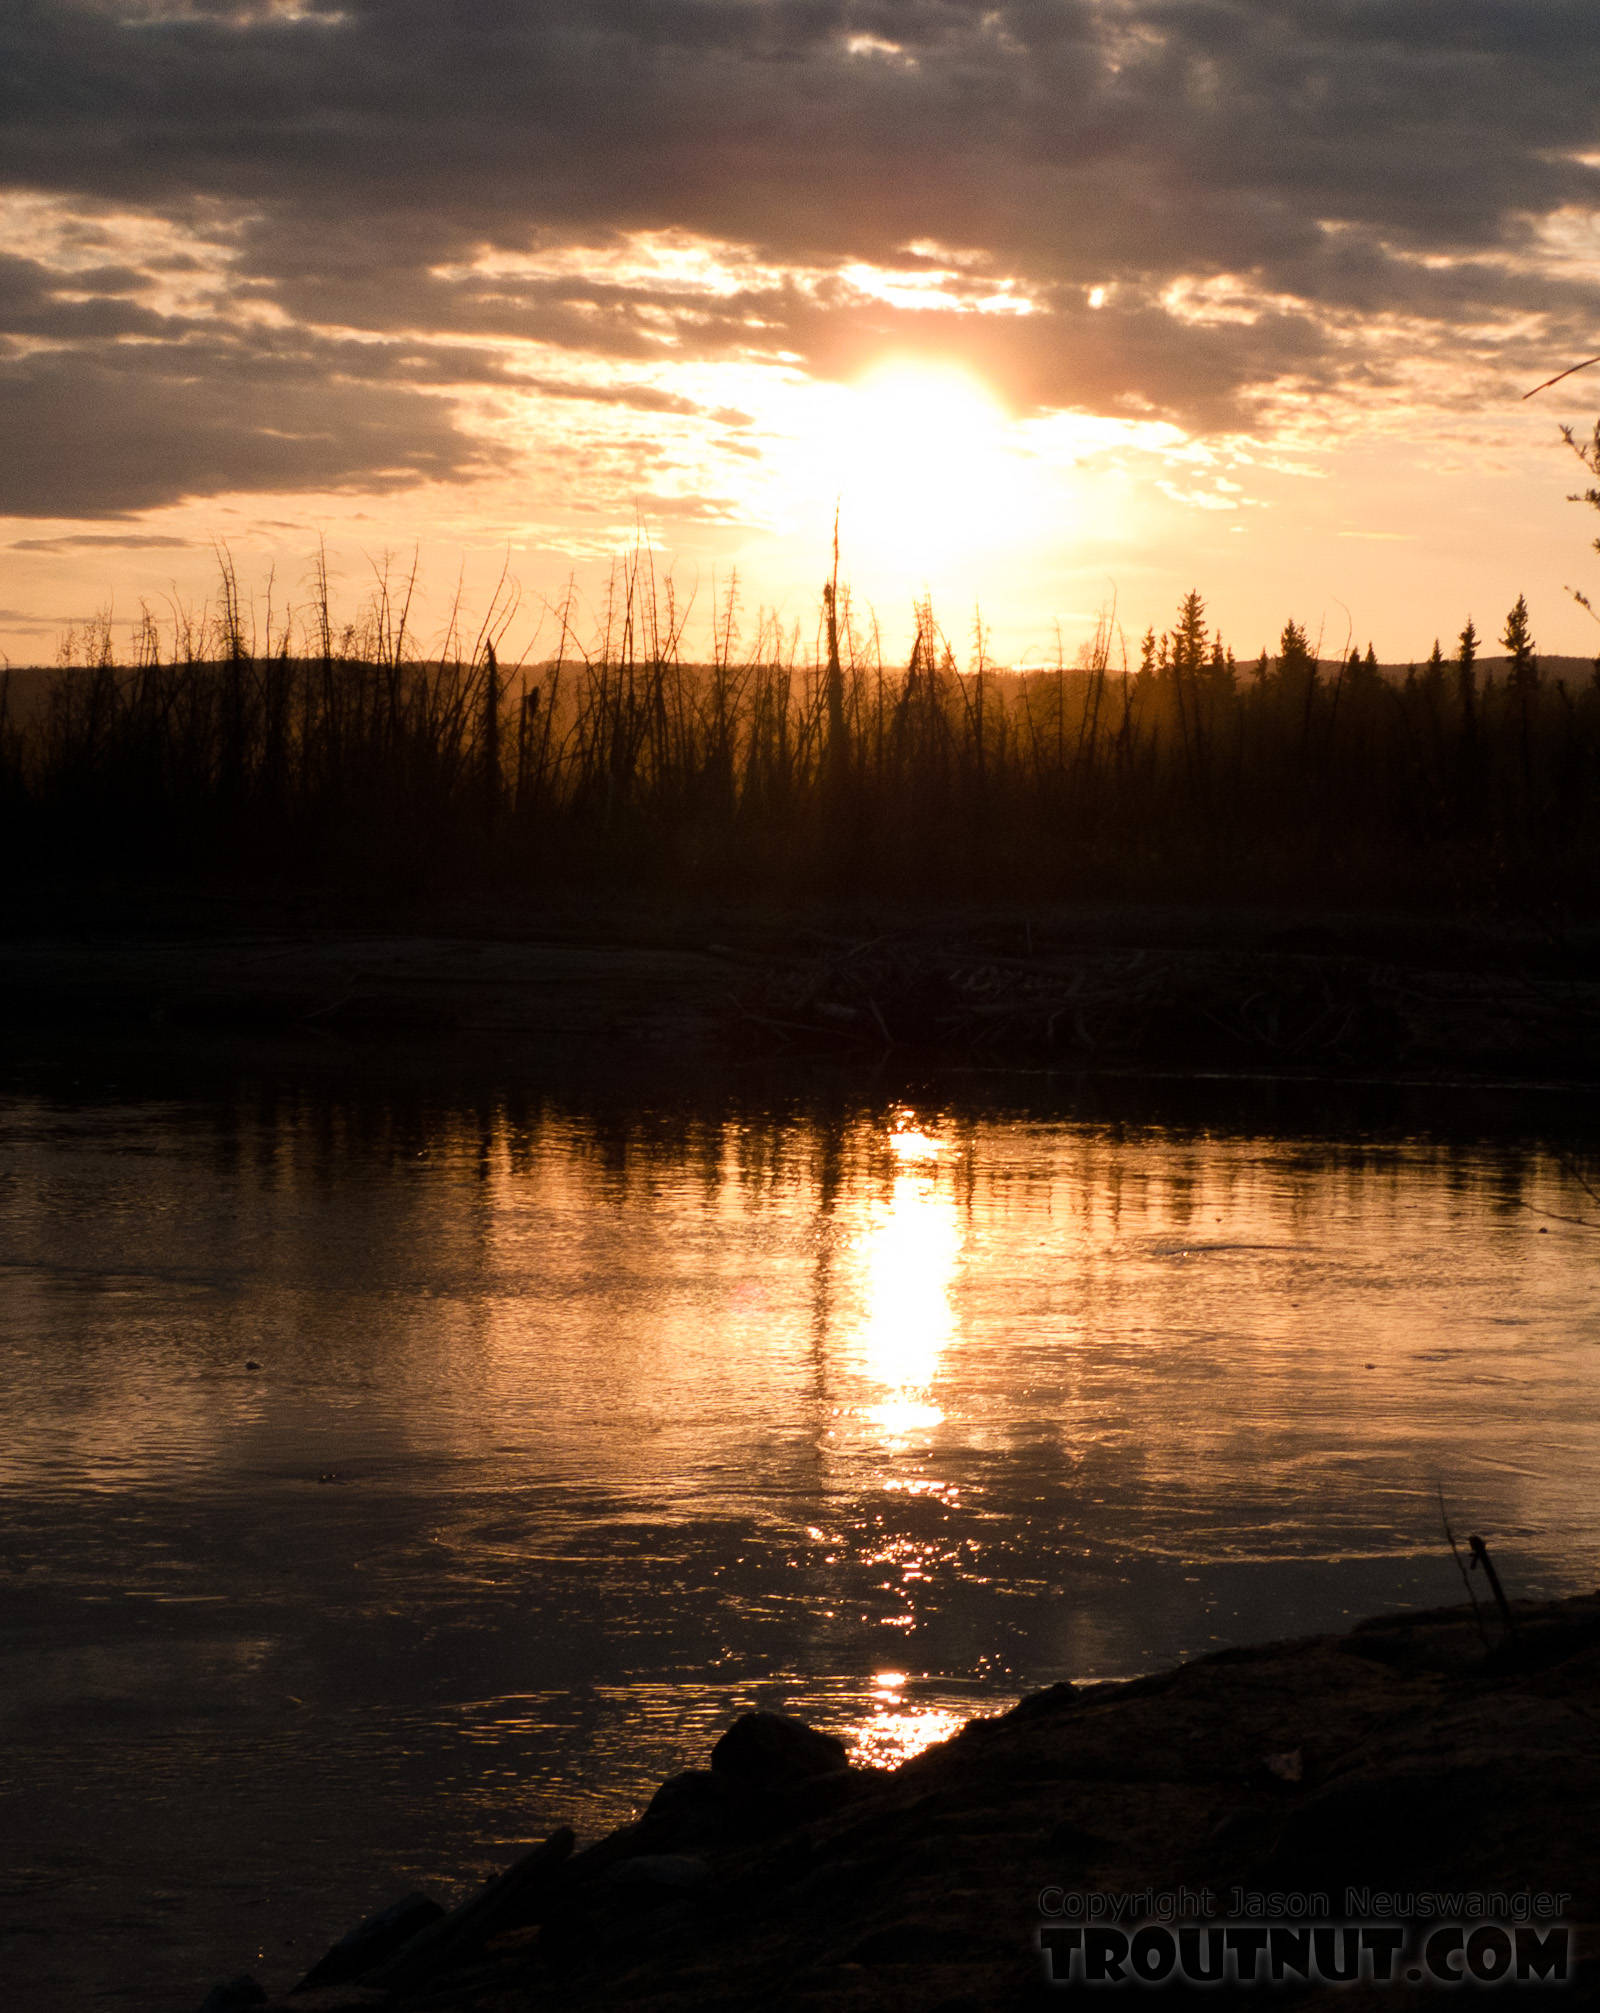  From the Tanana River in Alaska.